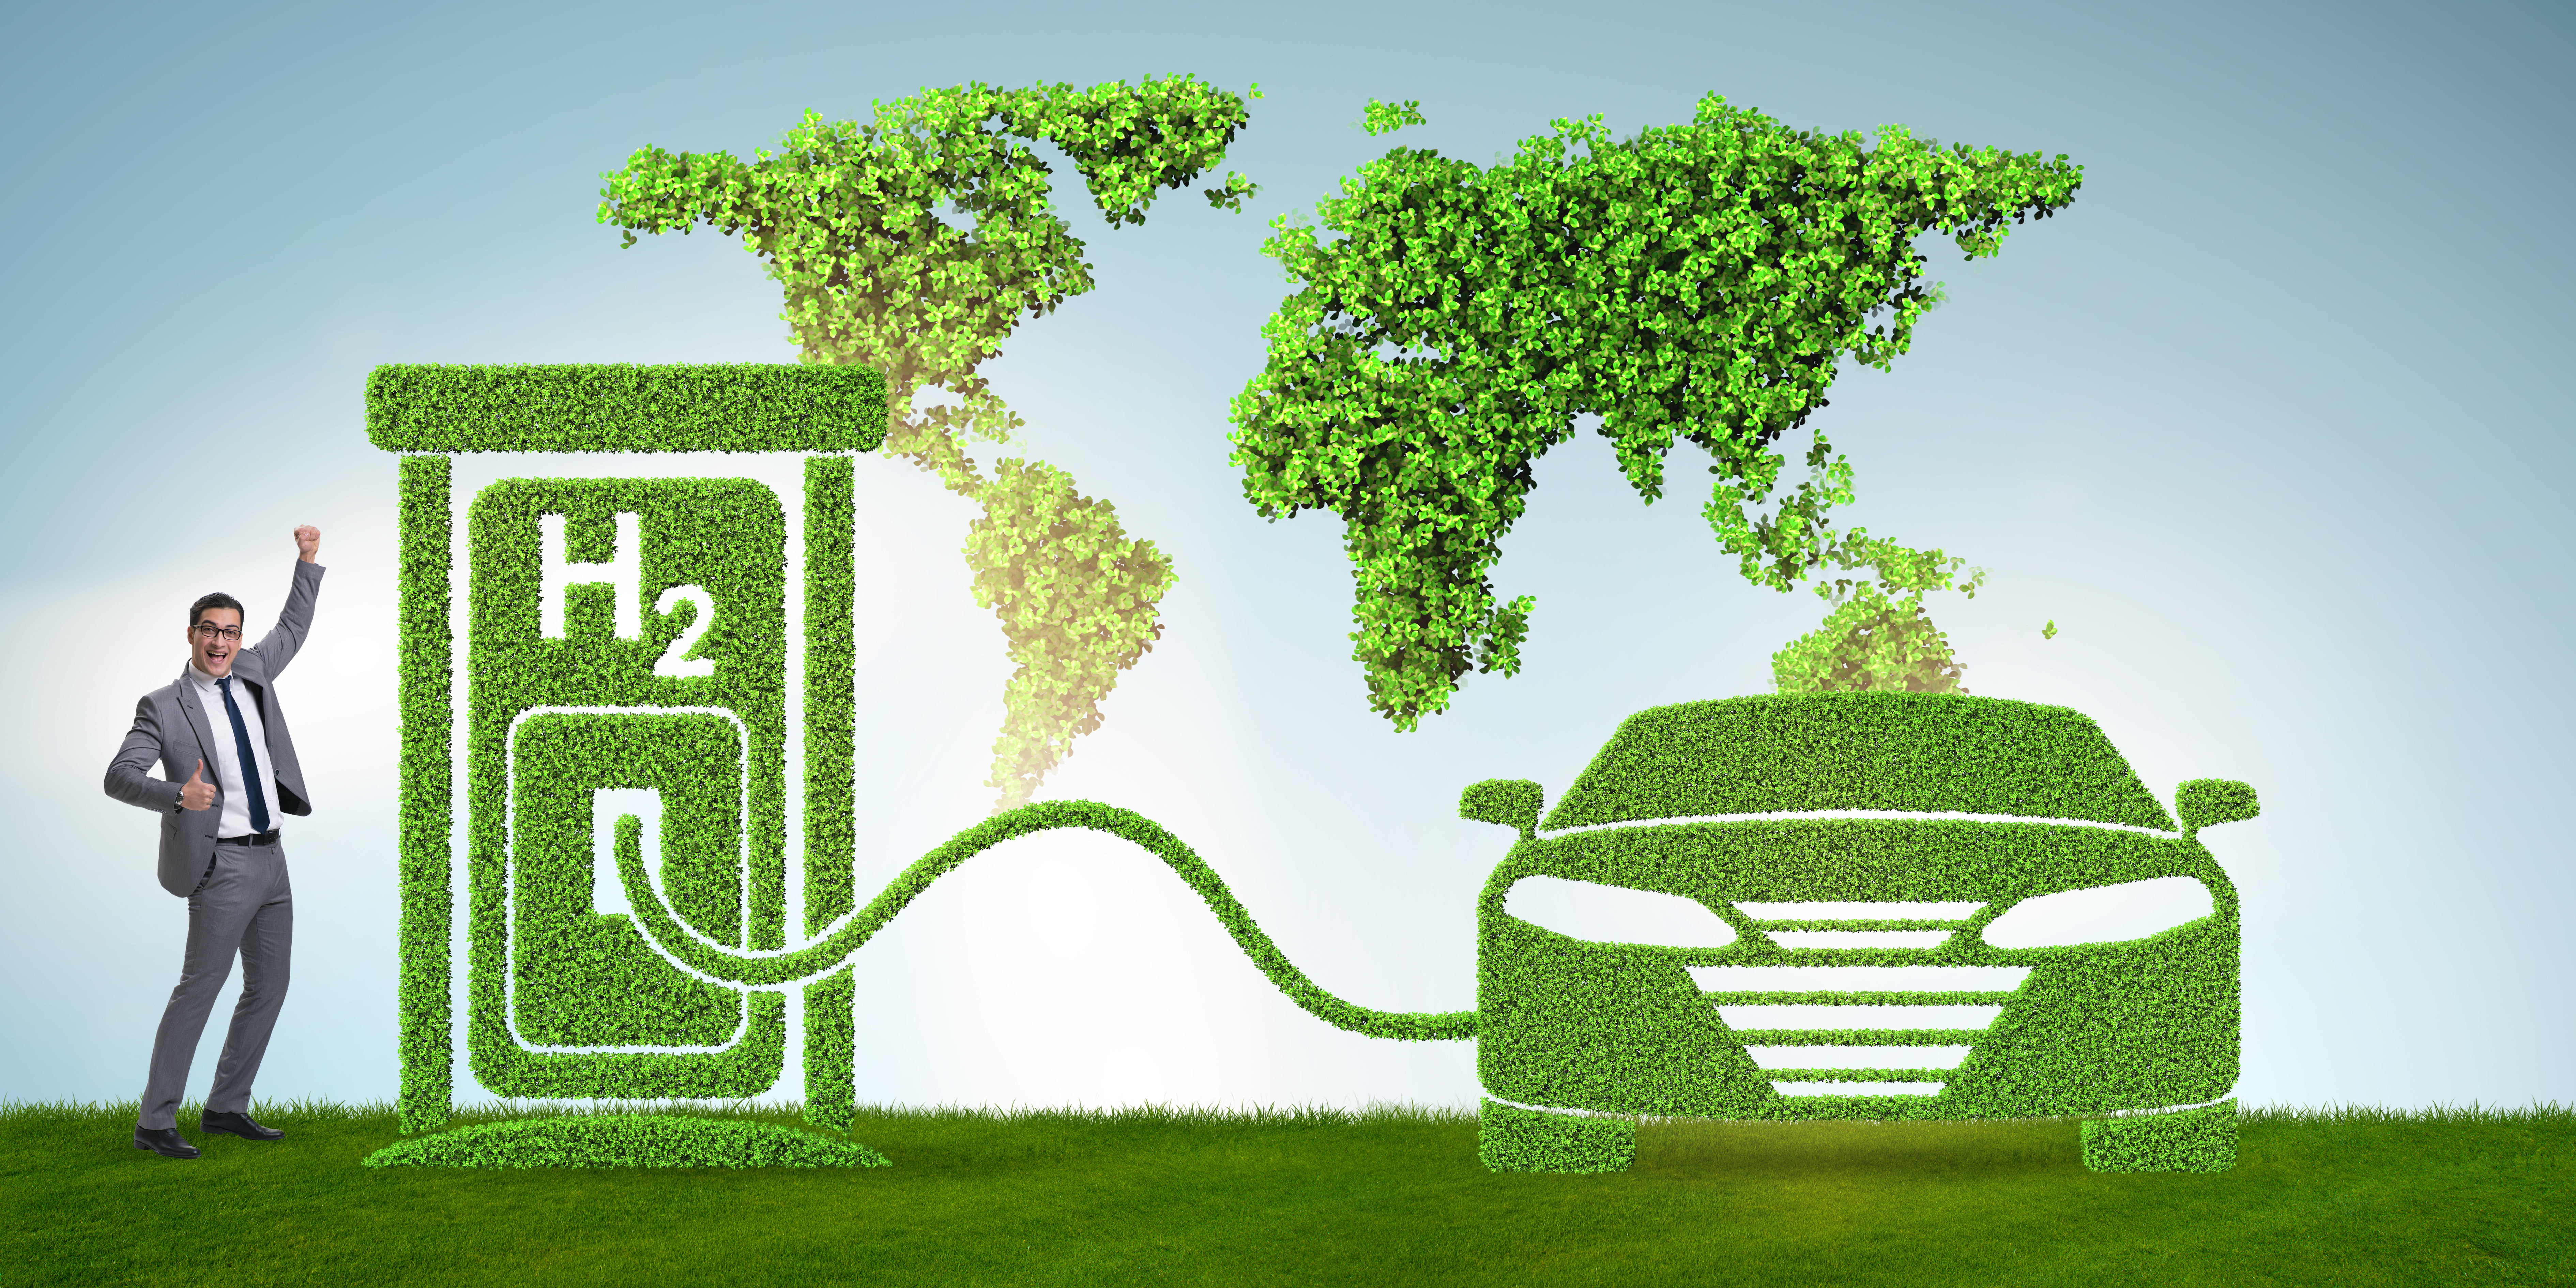 2023世界氢能与燃料电池产业博览会